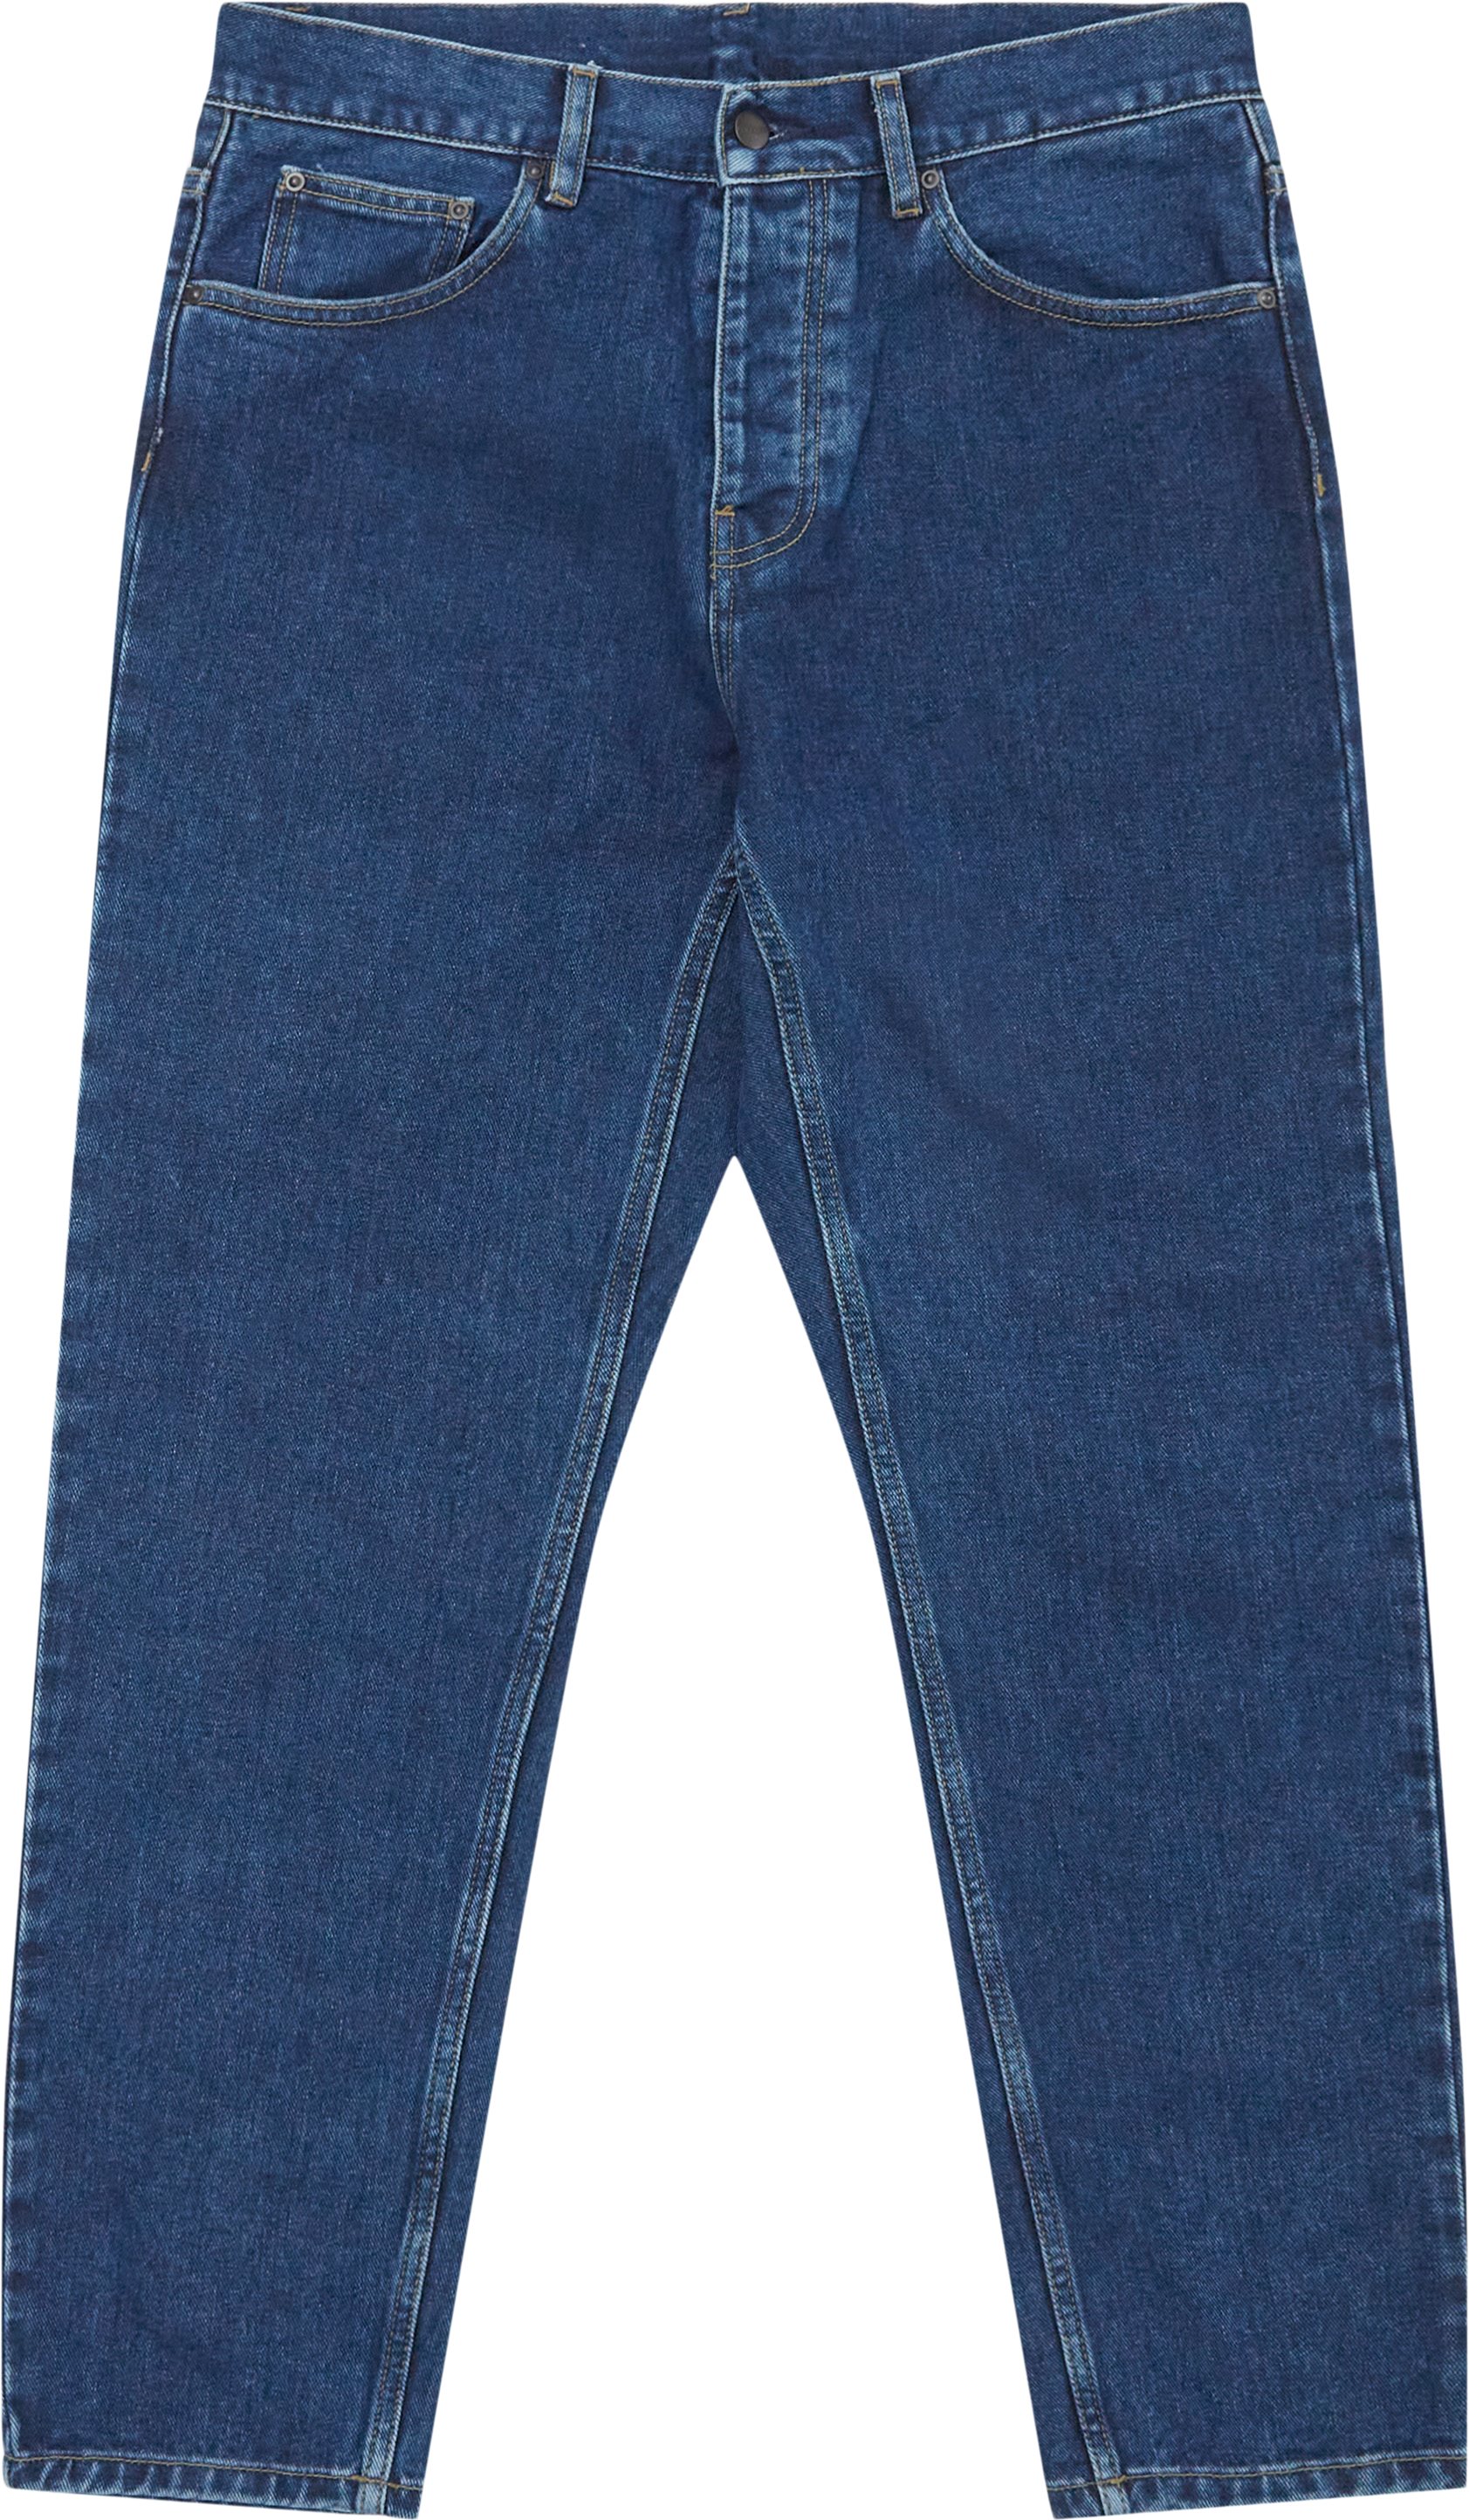 Newel I029208 - Jeans - Regular fit - Denim